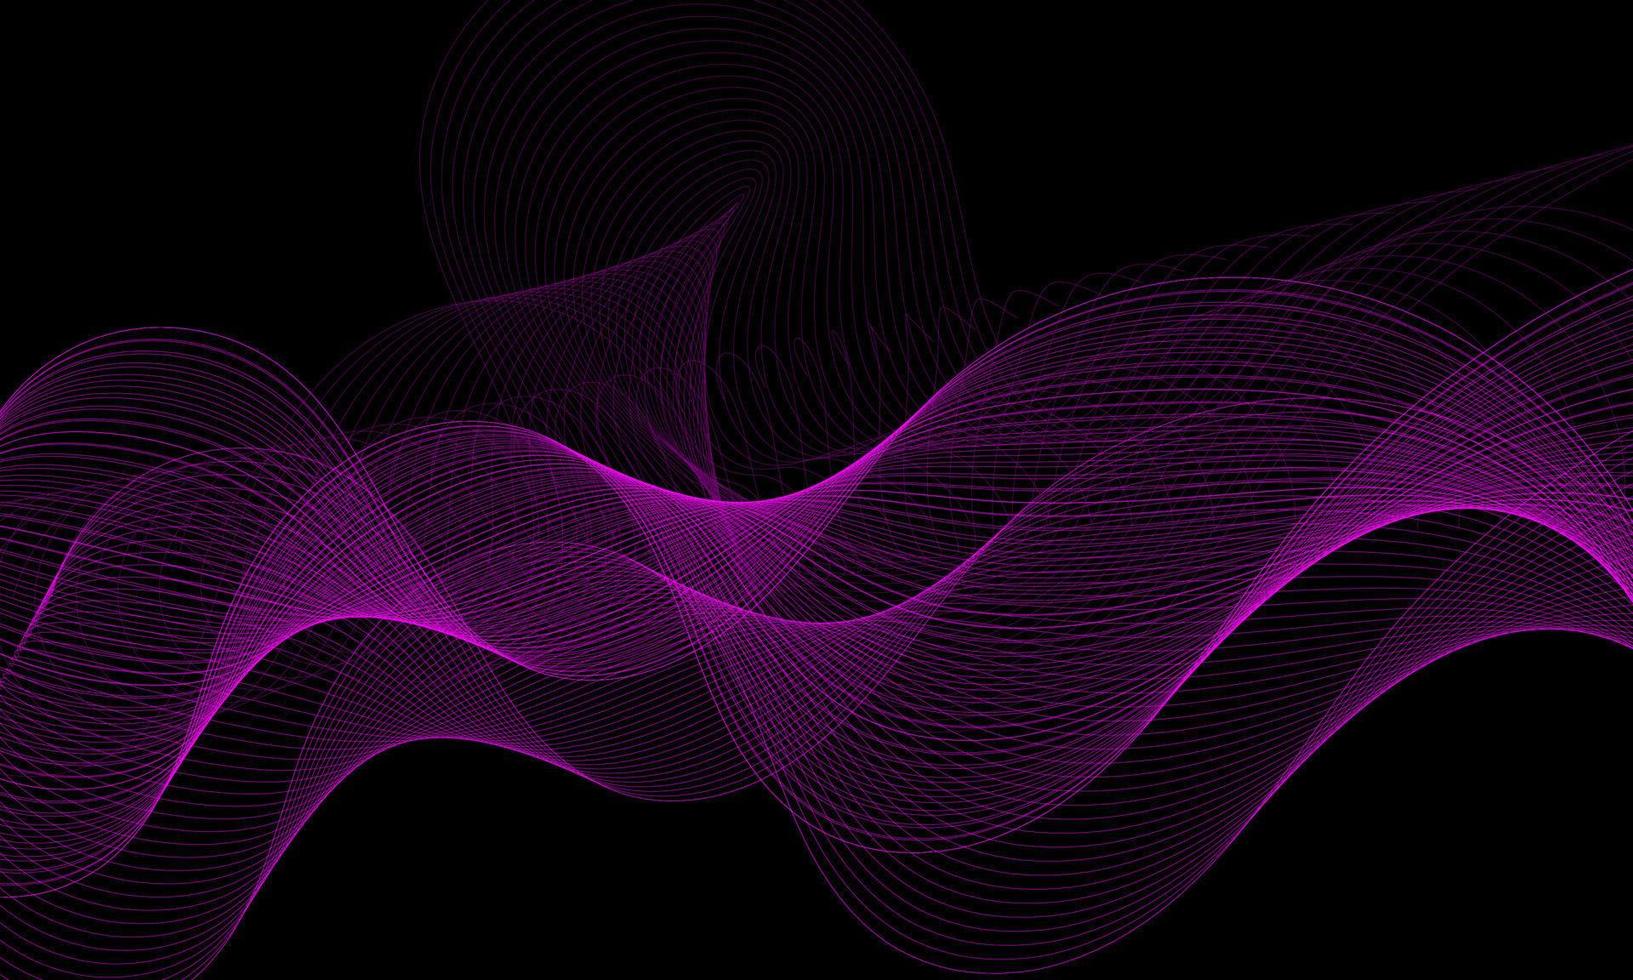 ondas abstratas linhas dinâmicas fluindo luz roxa isolada no fundo preto. conceito de design de ilustração vetorial de música, festa, tecnologia, moderna. vetor